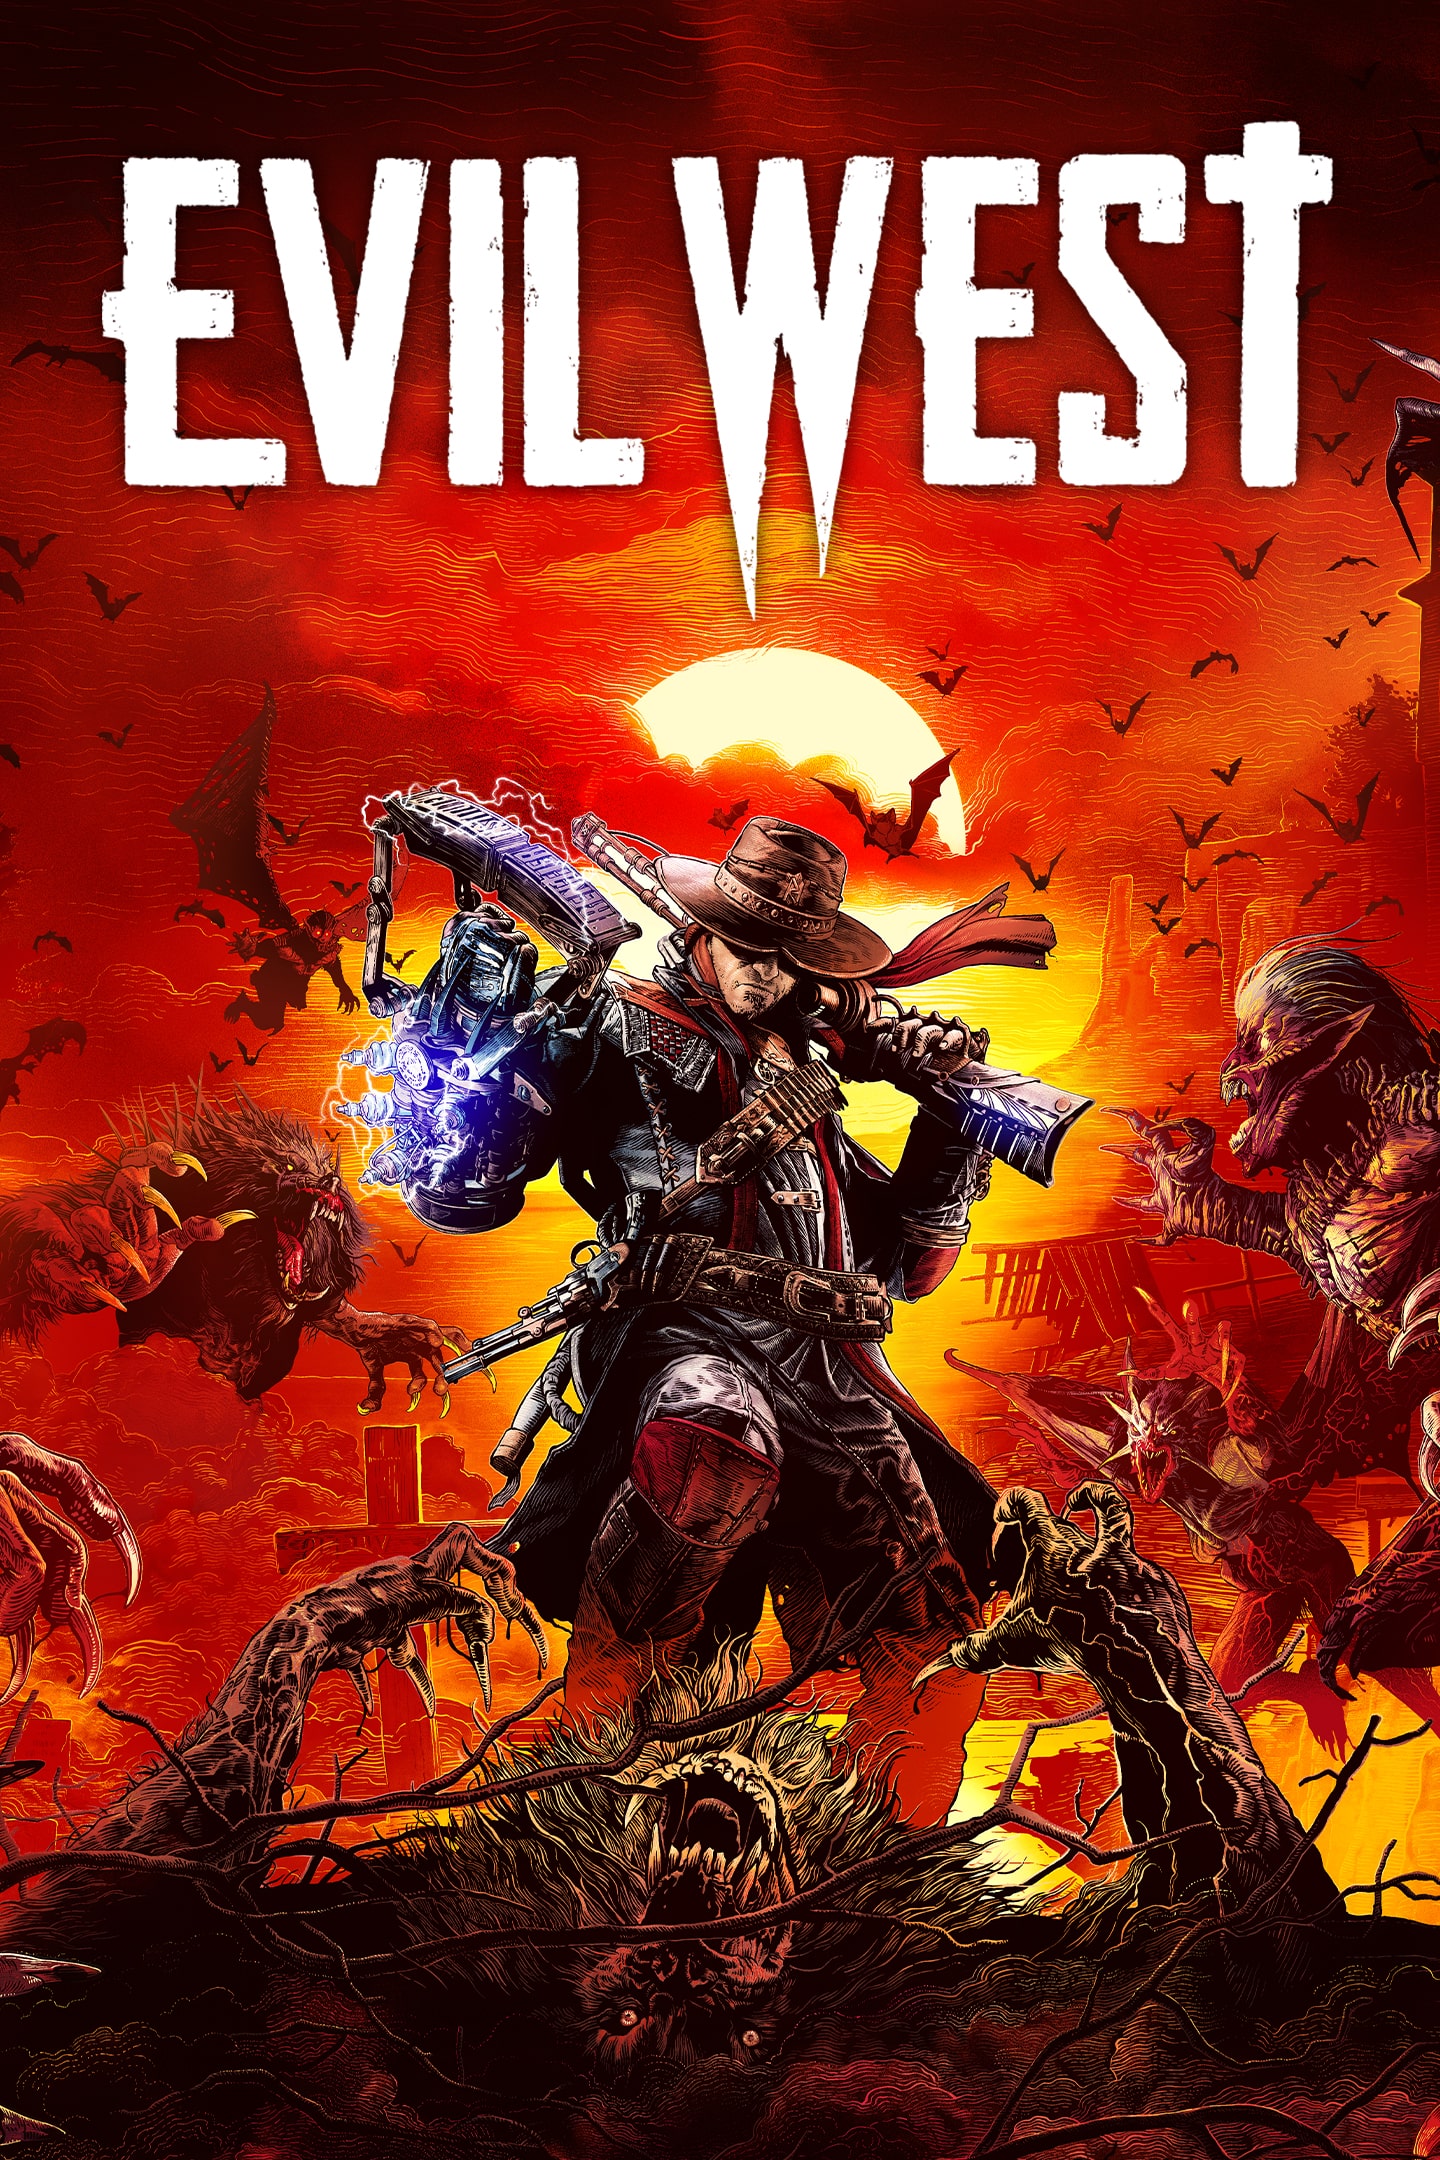 Evil West for PlayStation 5